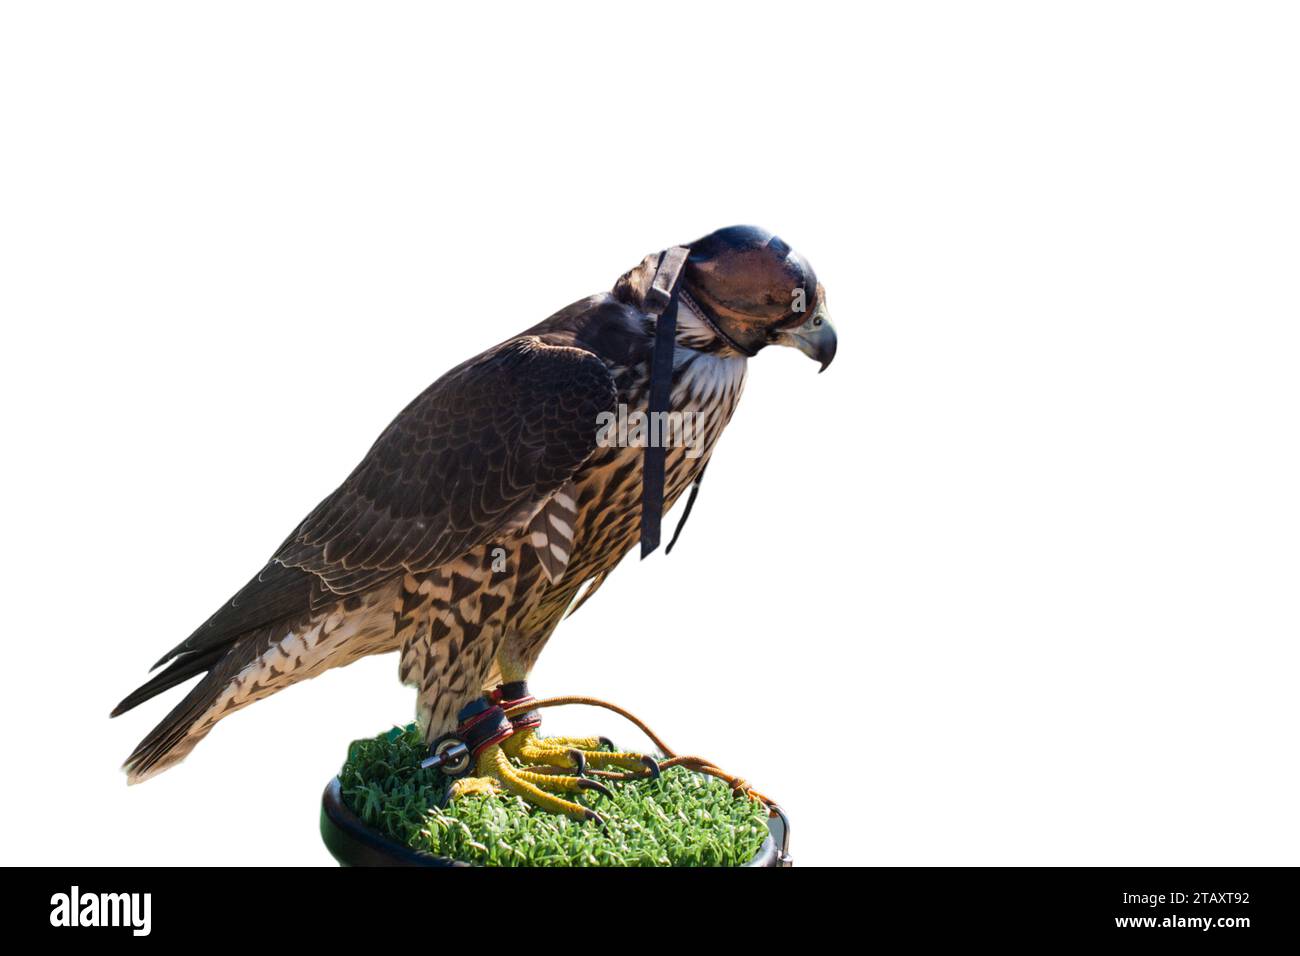 Falcon formé comme faune, reconstitution et concept de chasse Banque D'Images